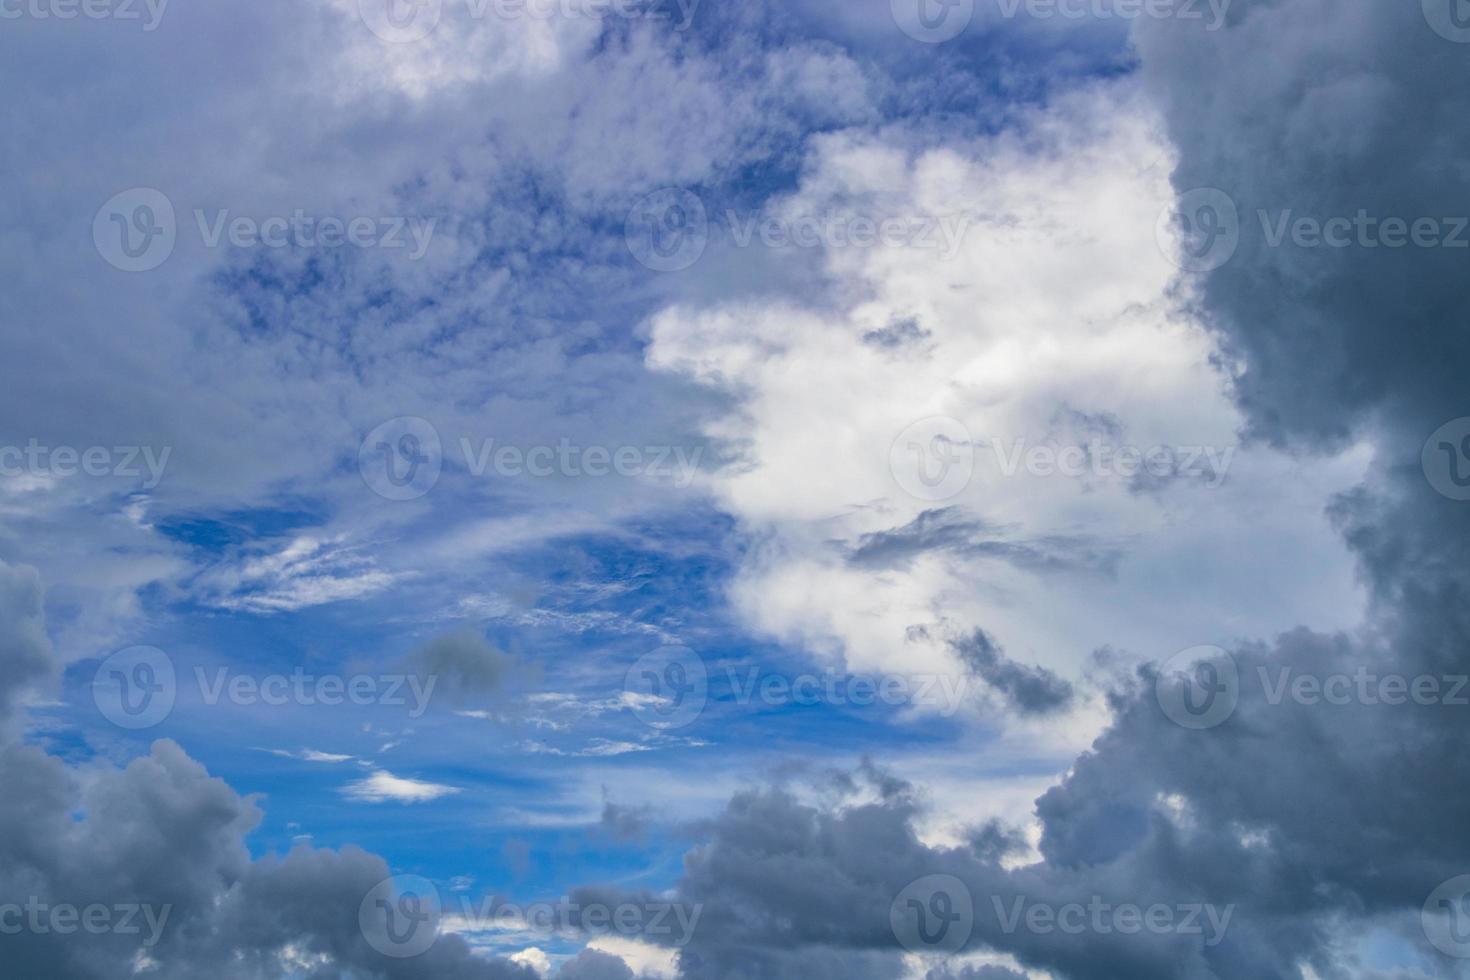 ongelooflijke wolkenformaties en blauwe lucht boven thailand. foto